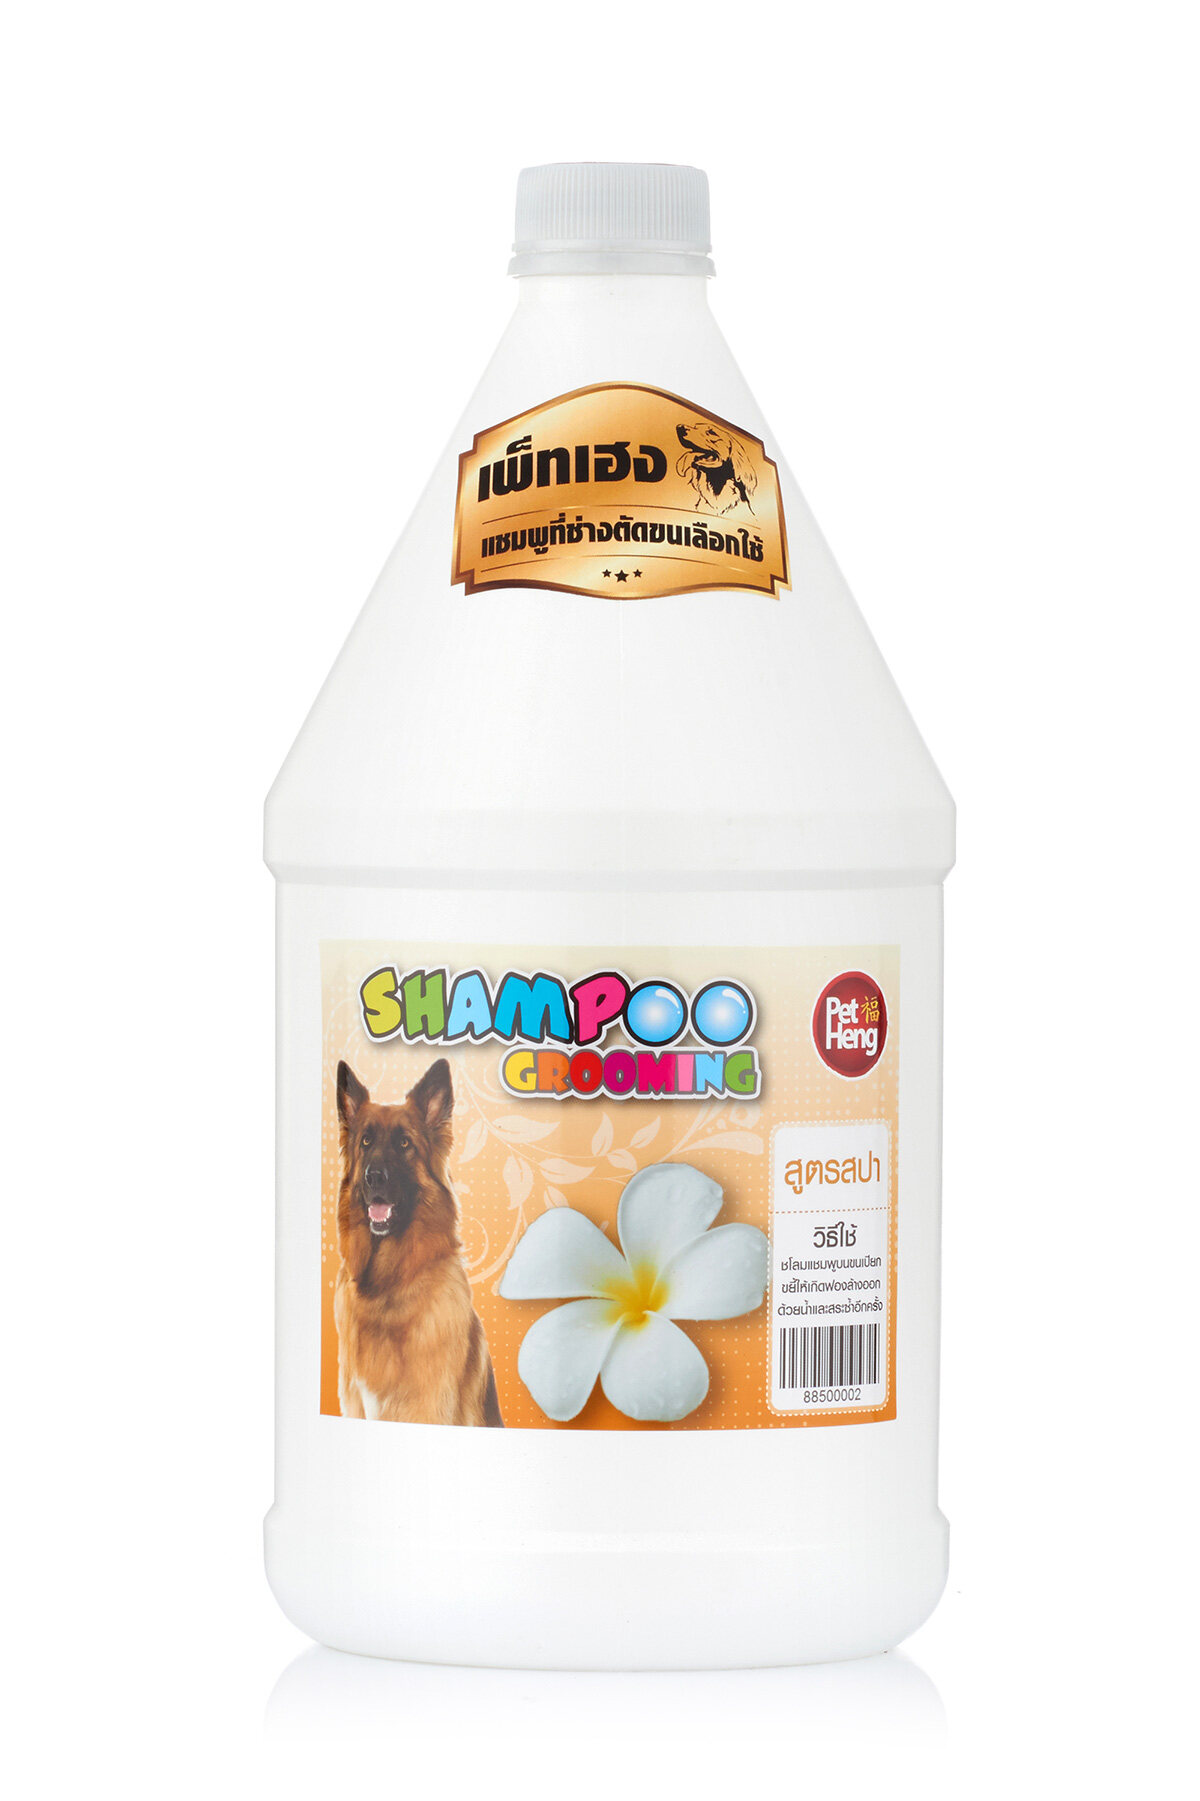 [1 แกลอน ] แชมพูสุนัขป้องกัน เห็บหมัด สำหรับสุนัขทุกสายพันธุ์ สูตรขนนุ่มหอมนาน Petheng Dog Shampoo